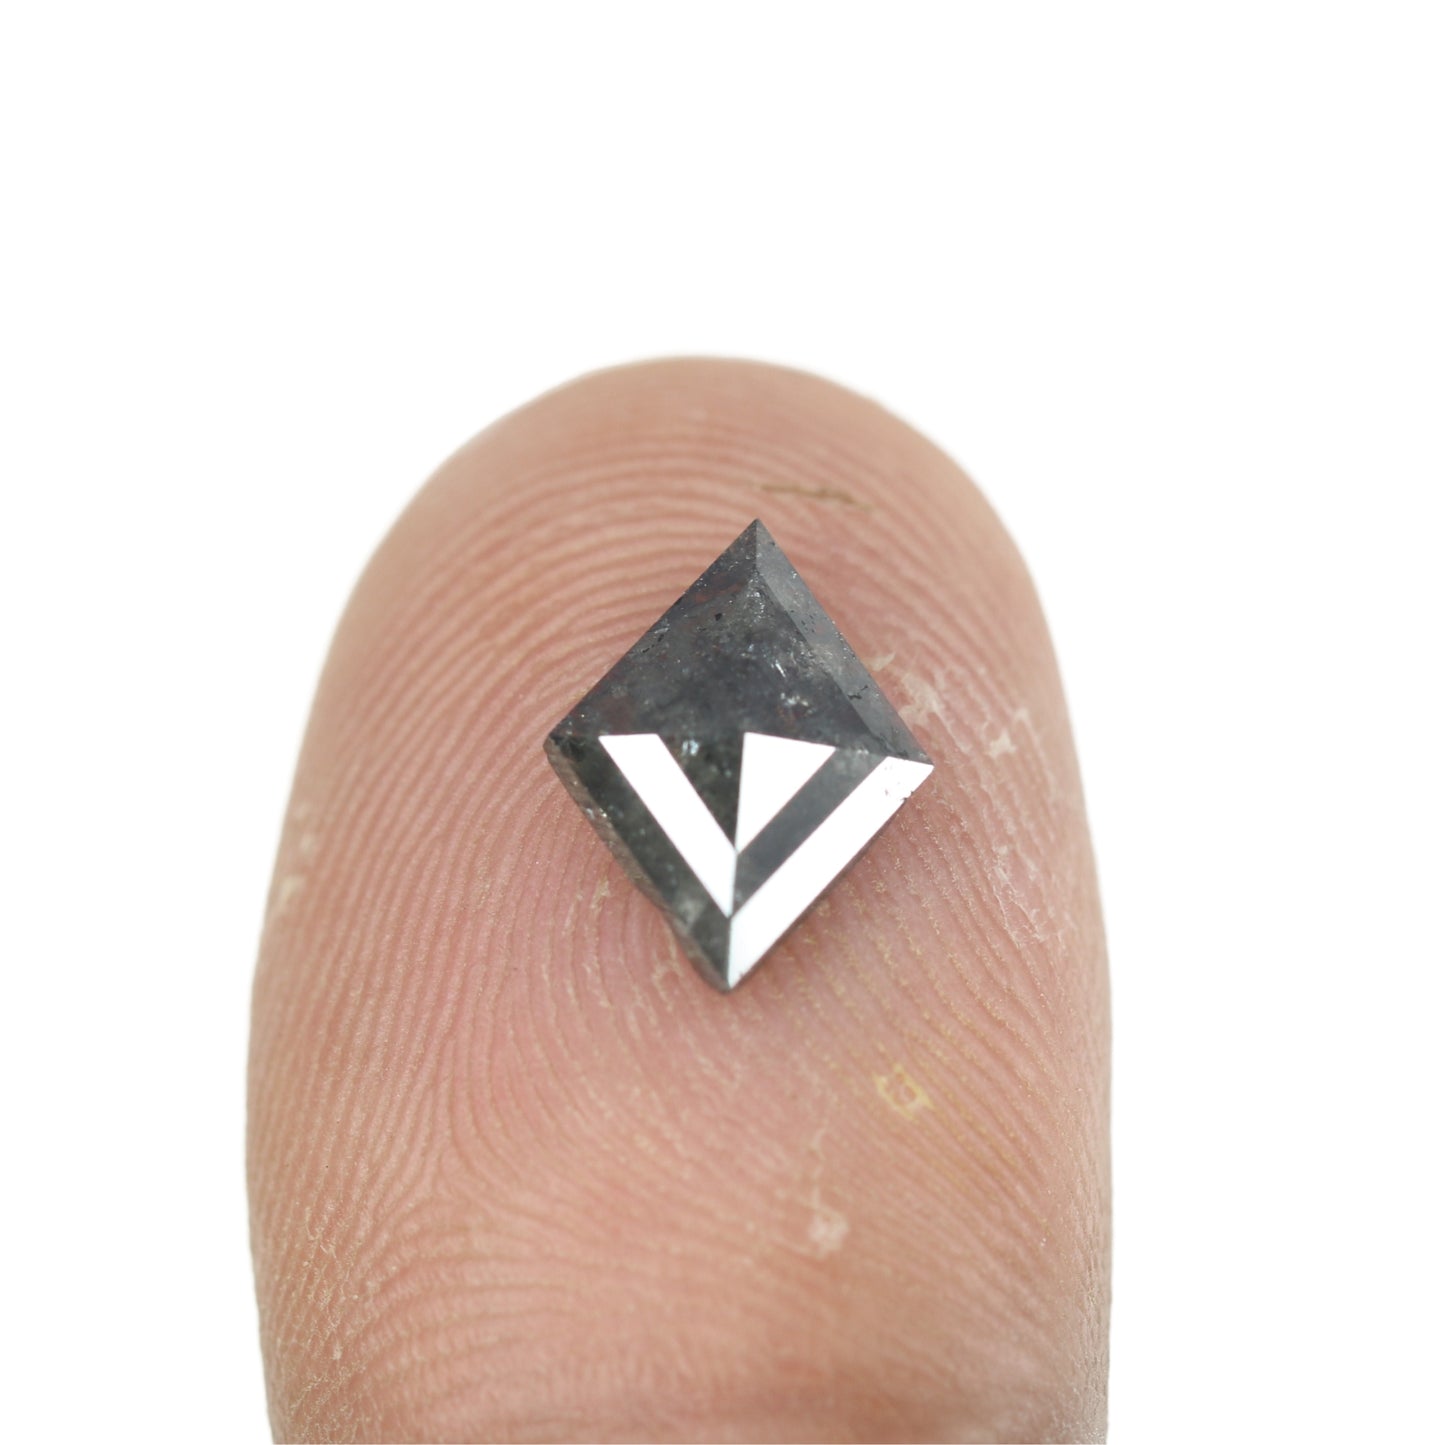 1.25 CT Kite Salt And Pepper Diamond For Engagement Ring | Gift For Girl Friend